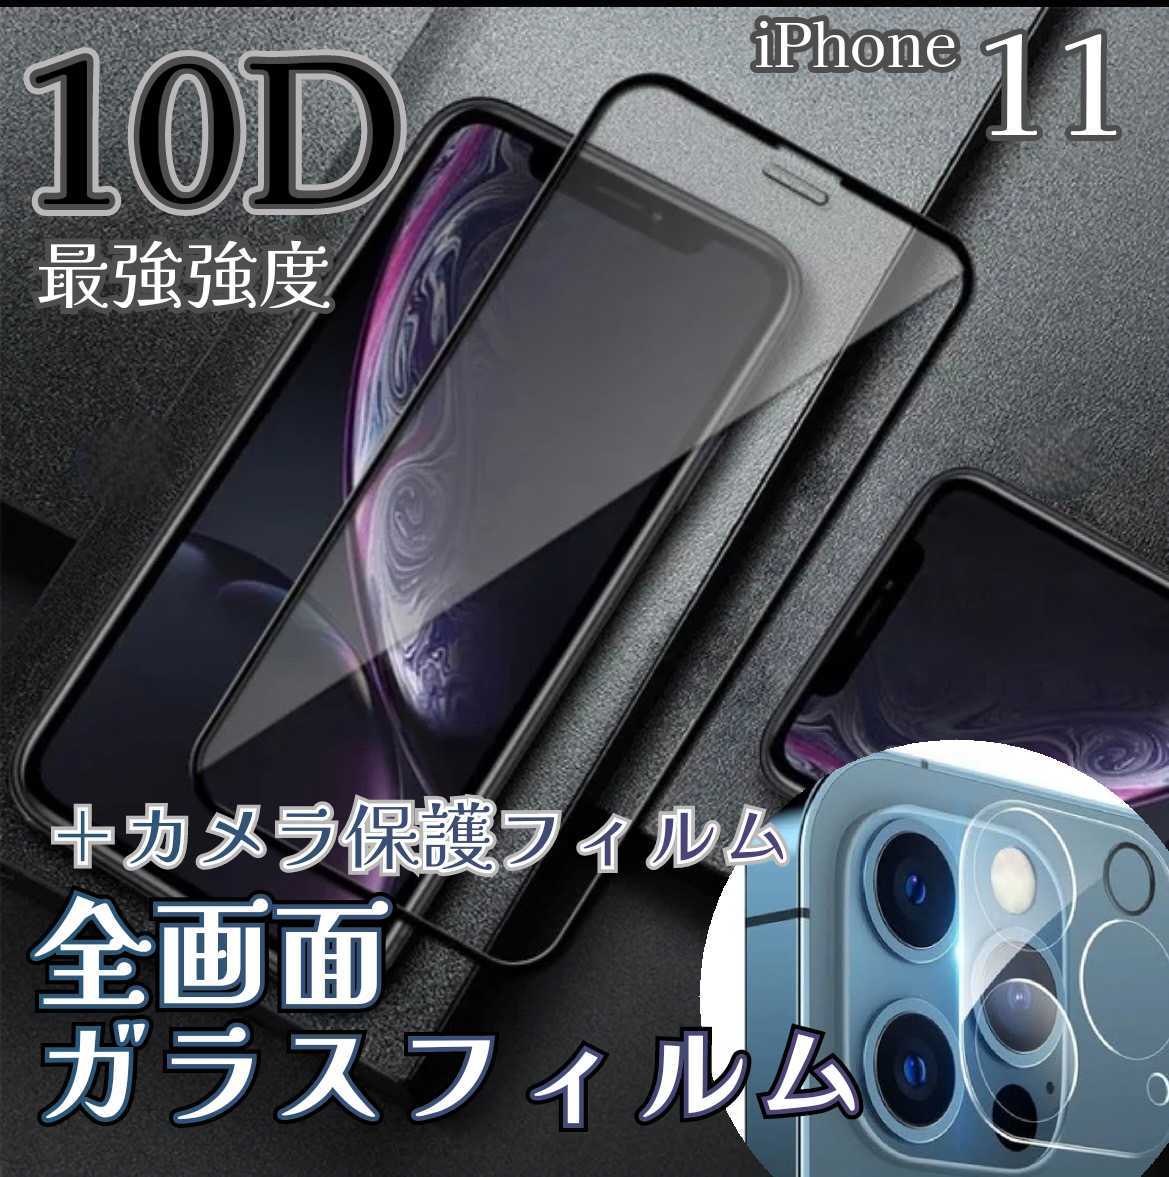 IPhone11 スマホ フィルム 画面 シール 強度 保護ガラス | velvogin.com.br